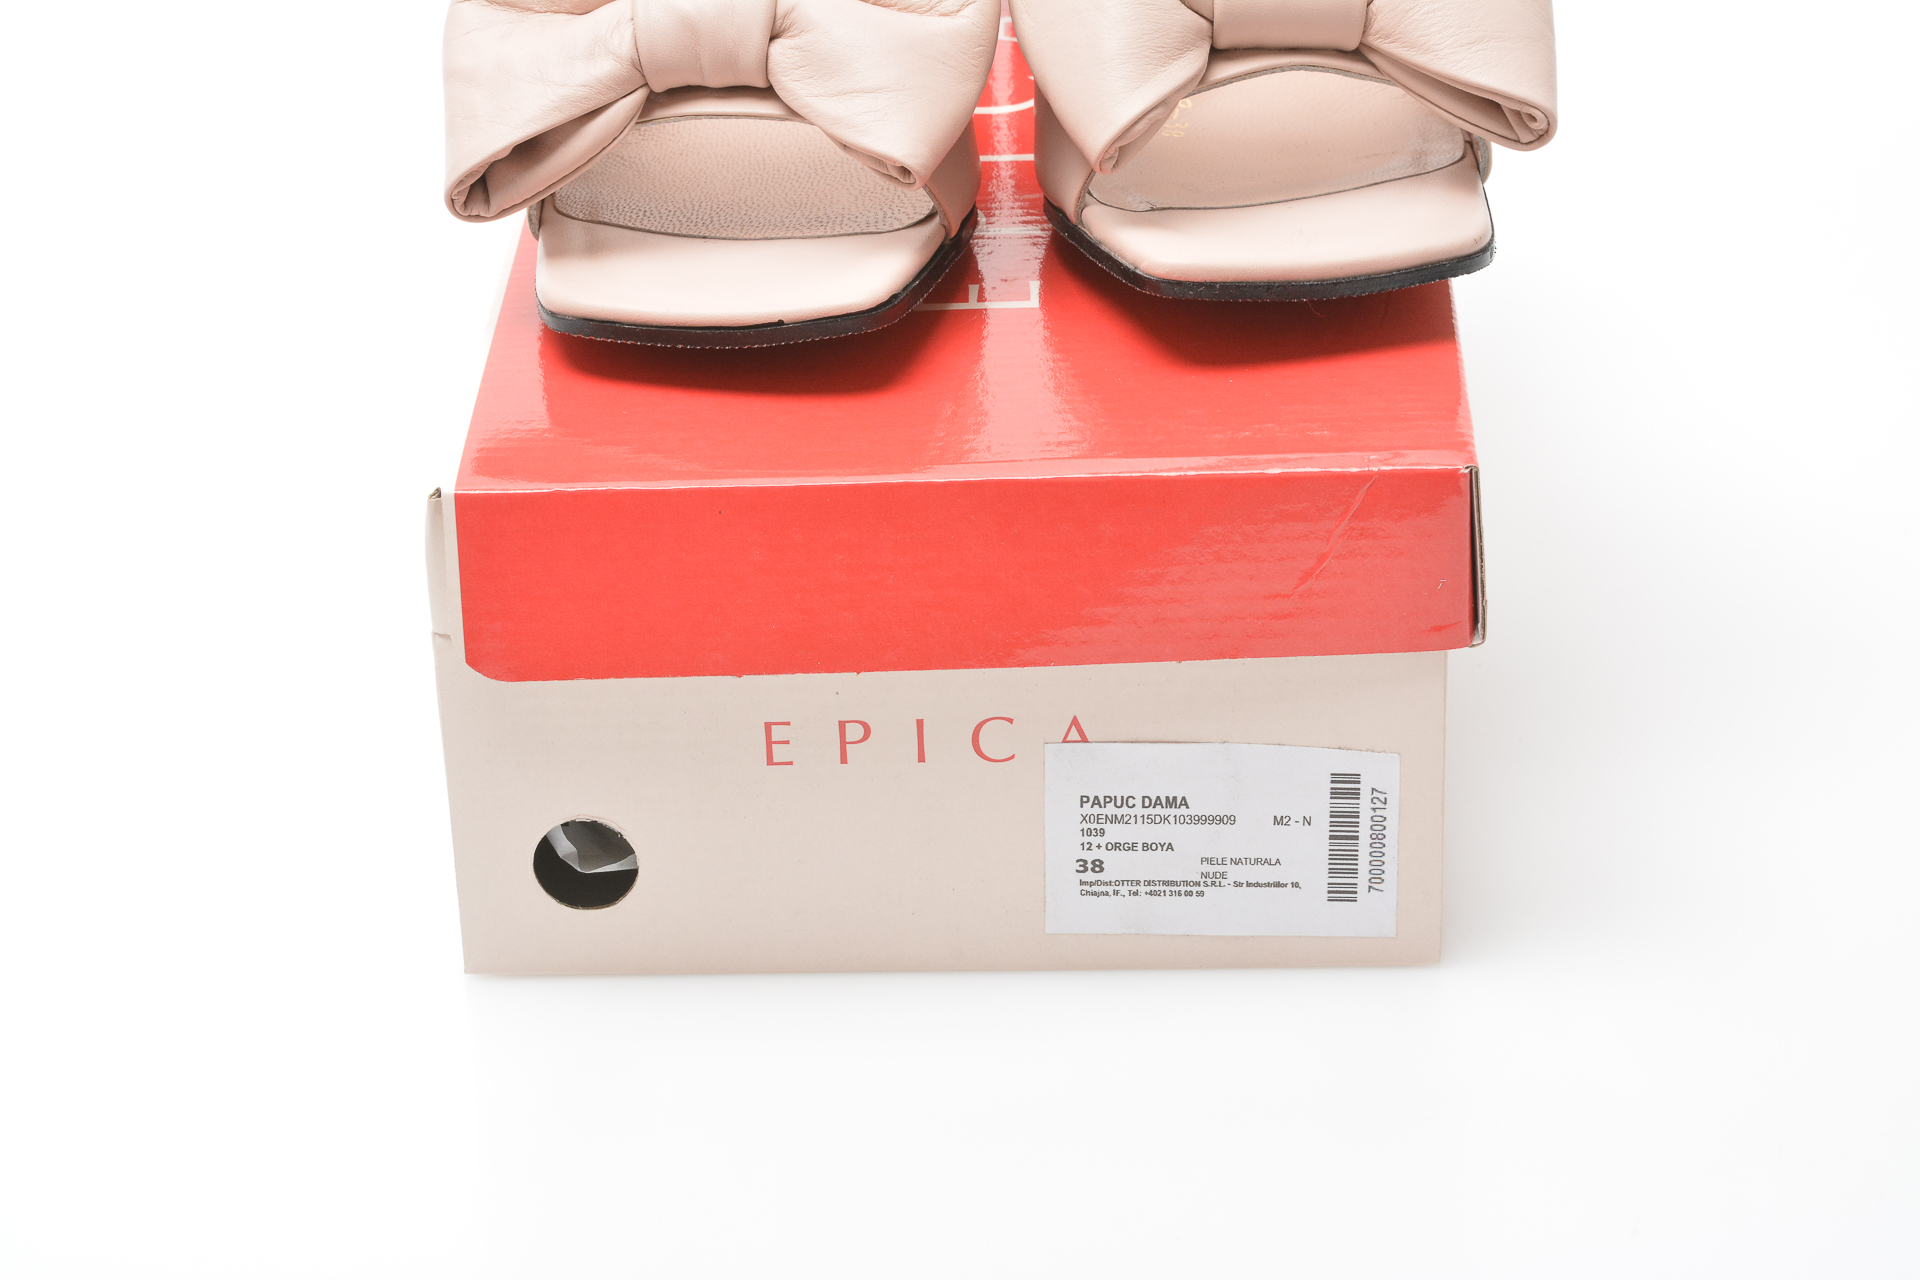 Papuci EPICA nude, 1039, din piele naturala Epica